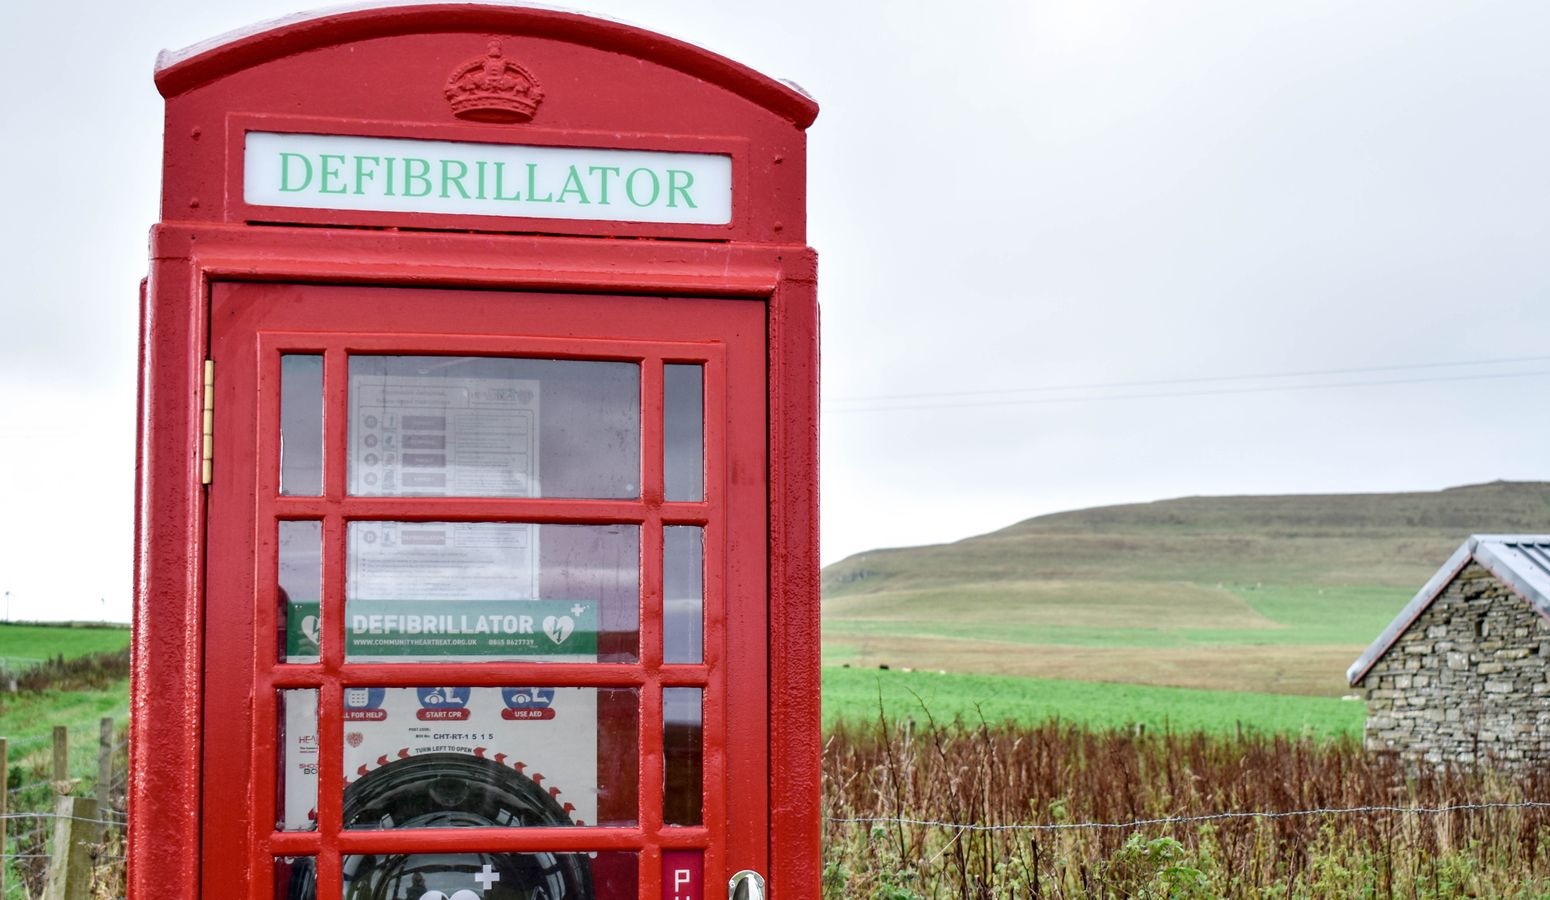 الاتصالات البريطانية تعرض الآلاف من أكشاك الهواتف الحمراء للبيع مقابل 1 جنيه إسترليني